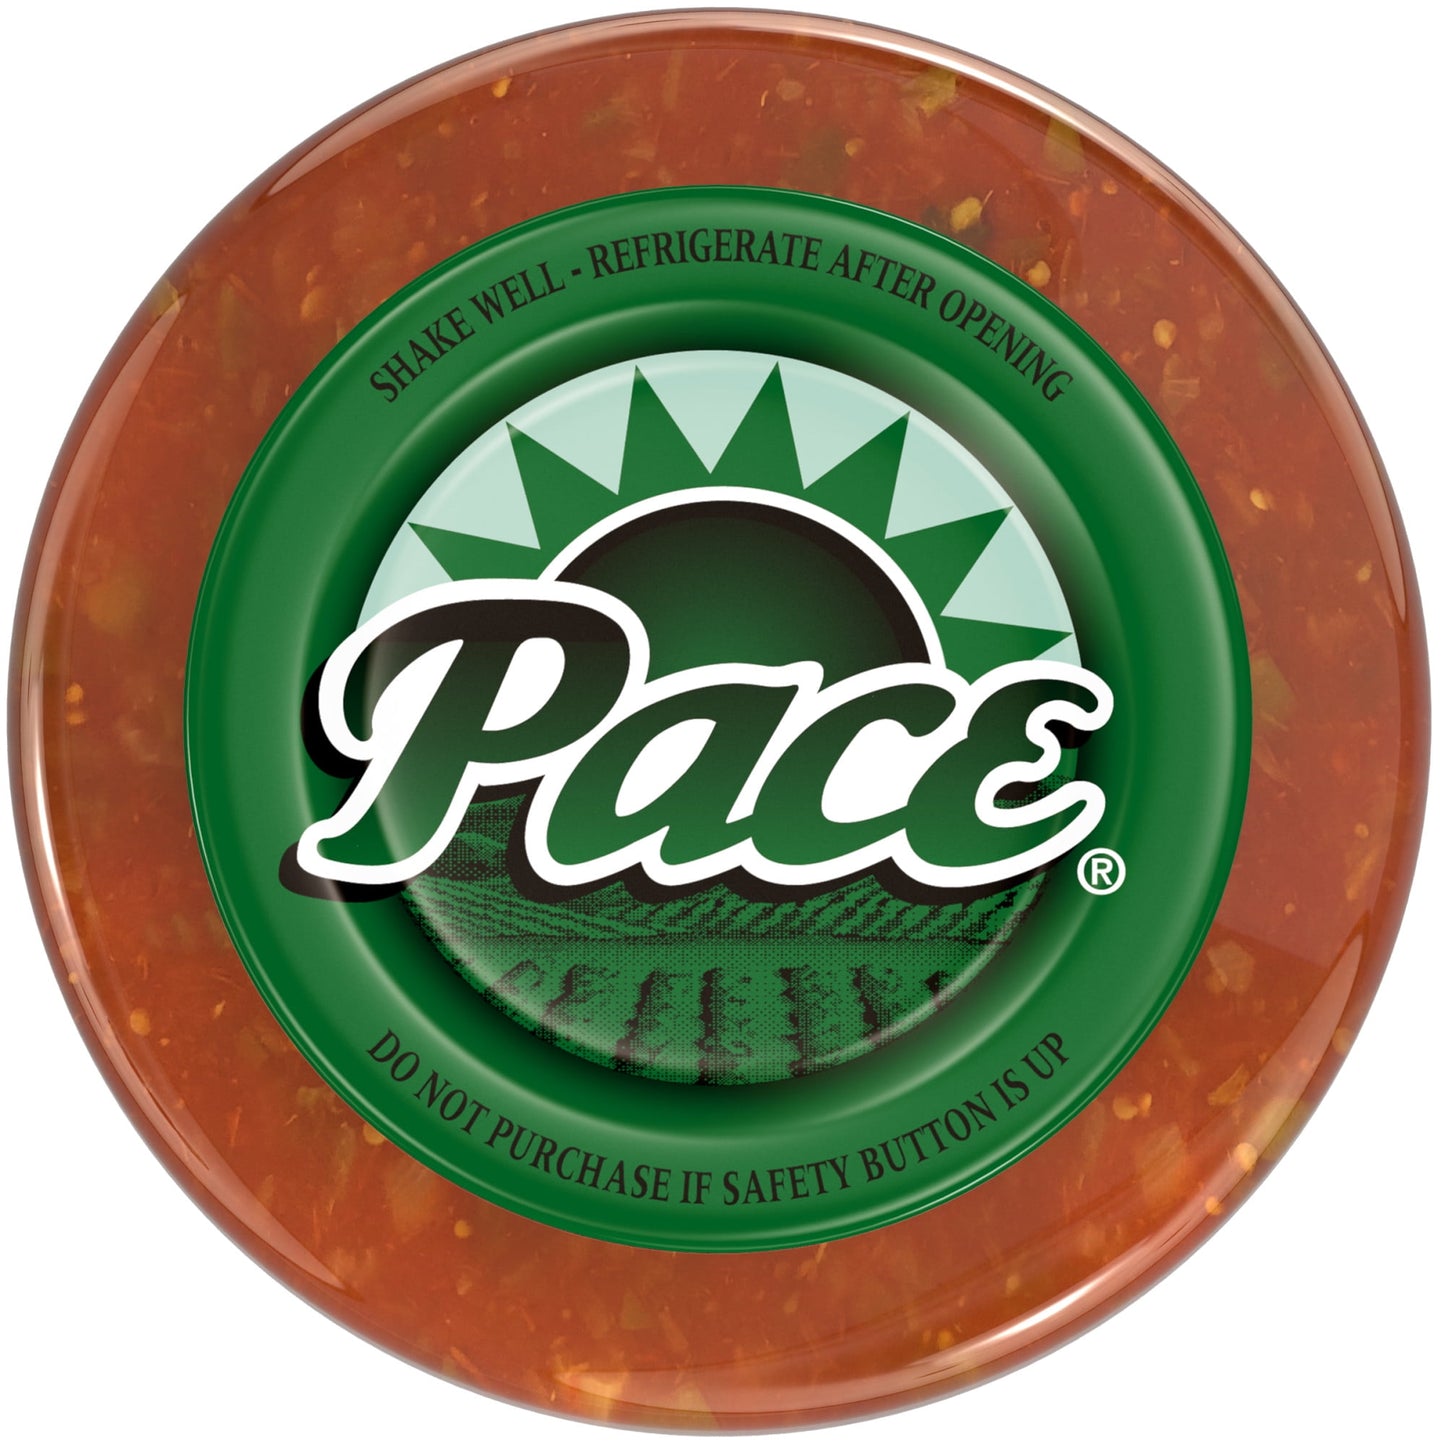 Pace Mild Picante Sauce, 16 oz Jar